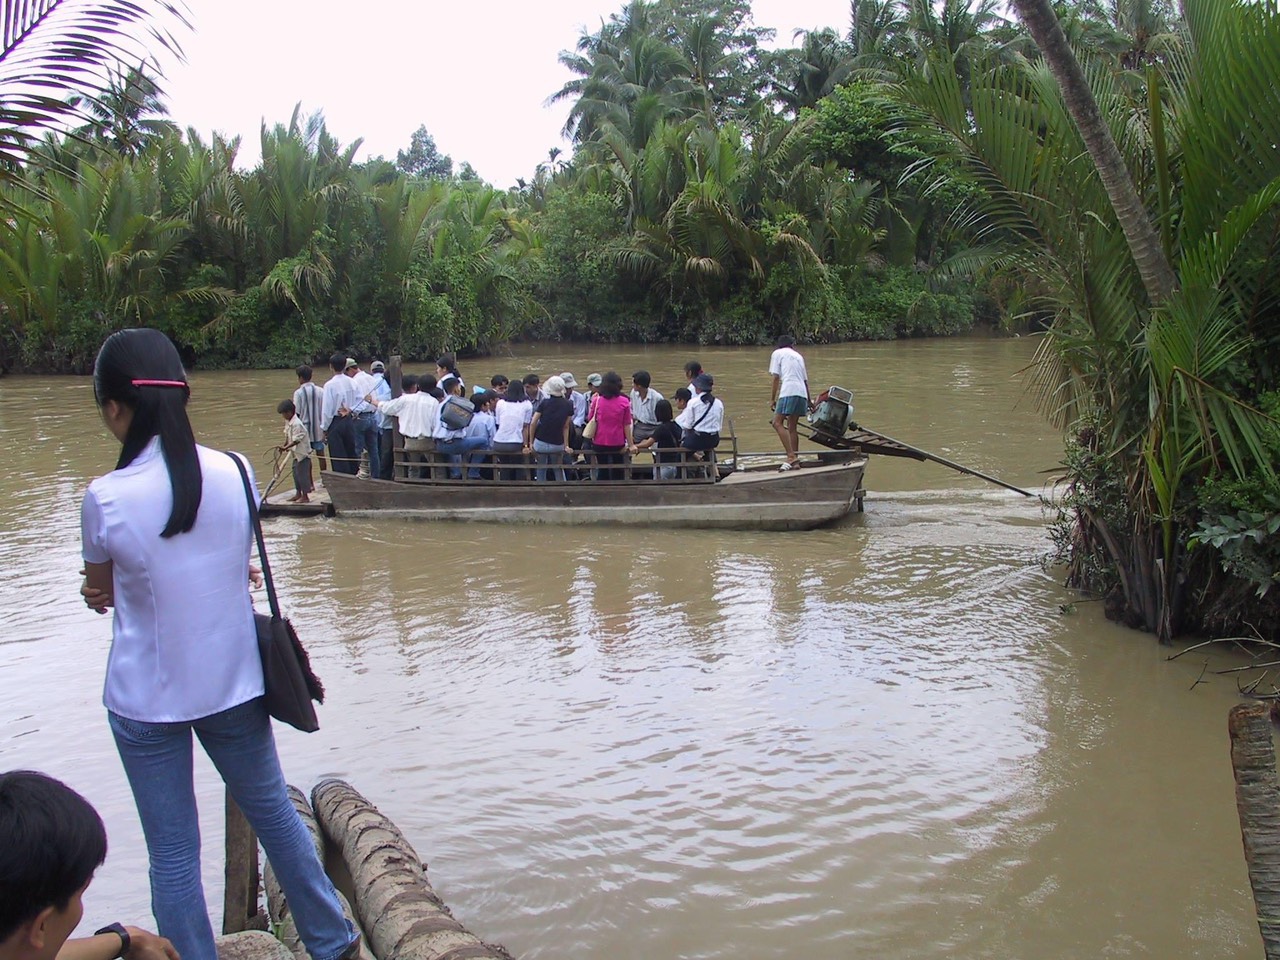 Des étudiants et des membres du personnel traversent une rivière boueuse à bord d’un bateau à moteur long et bas pour se rendre à l’école.